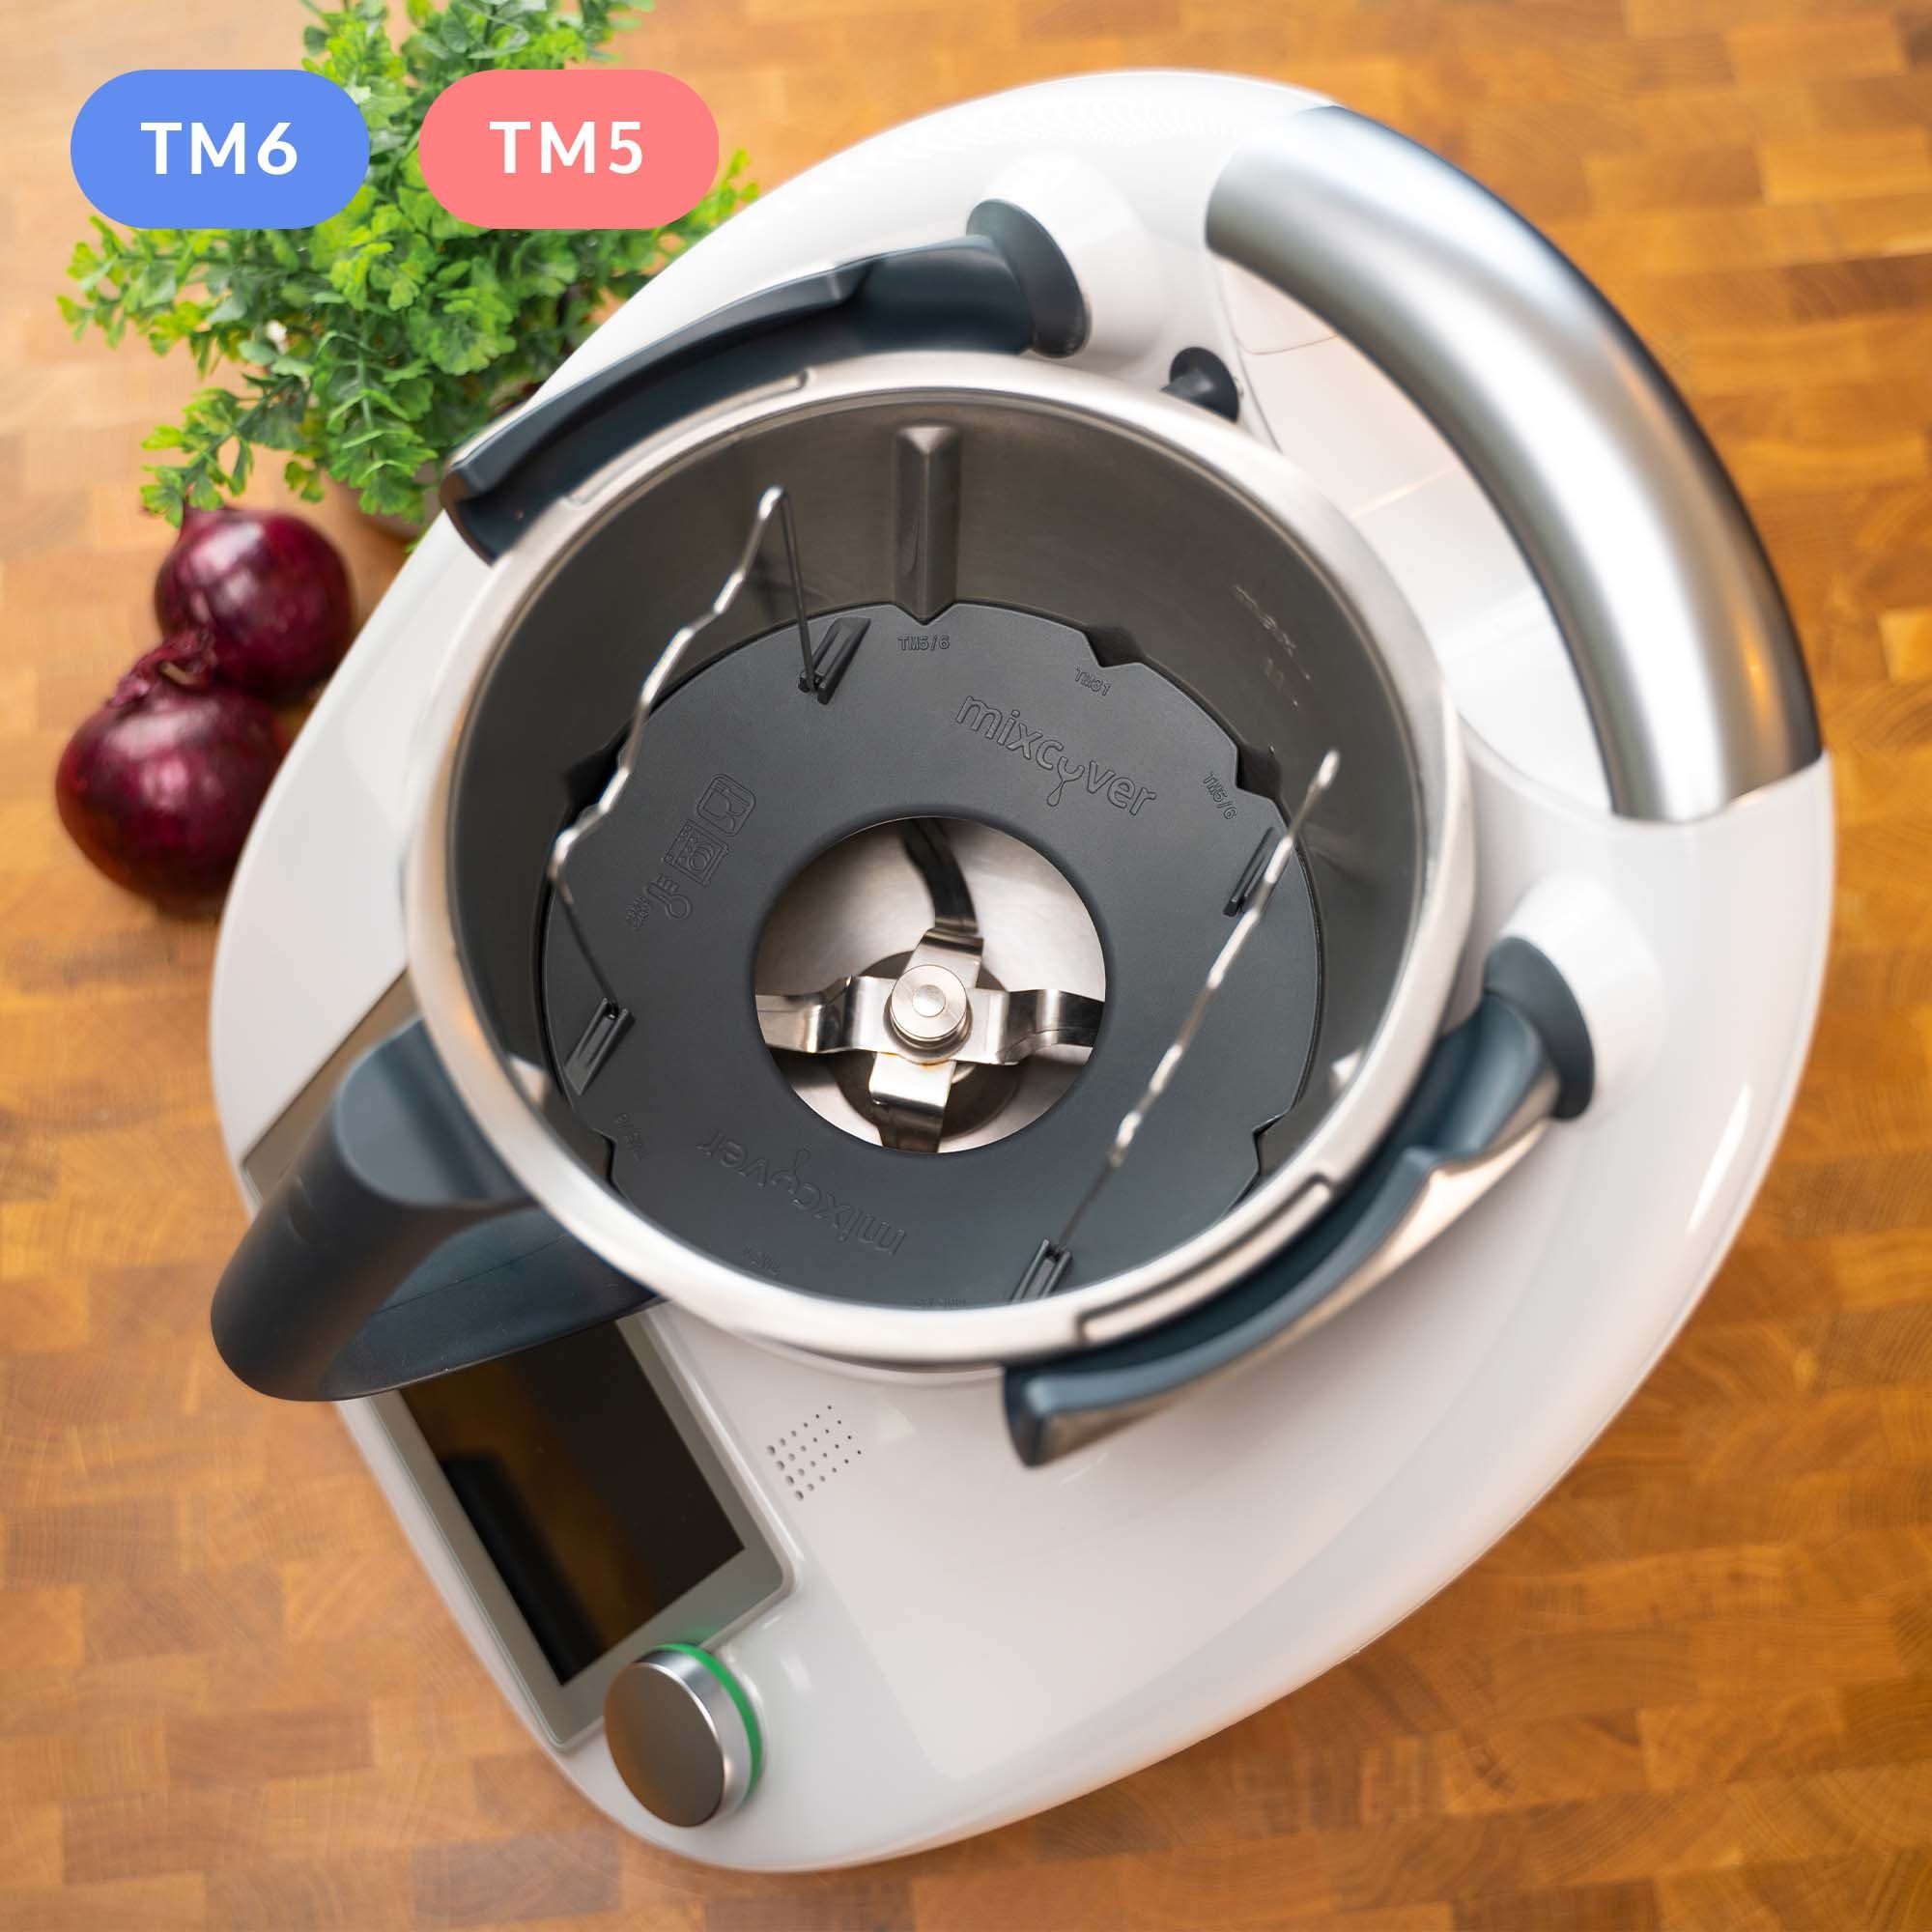 Mixcover Küchenmaschinen-Adapter mixcover Mixtopf Verkleinerung für Thermomix TM6 TM5 Häcksel Helfer, Pürieren